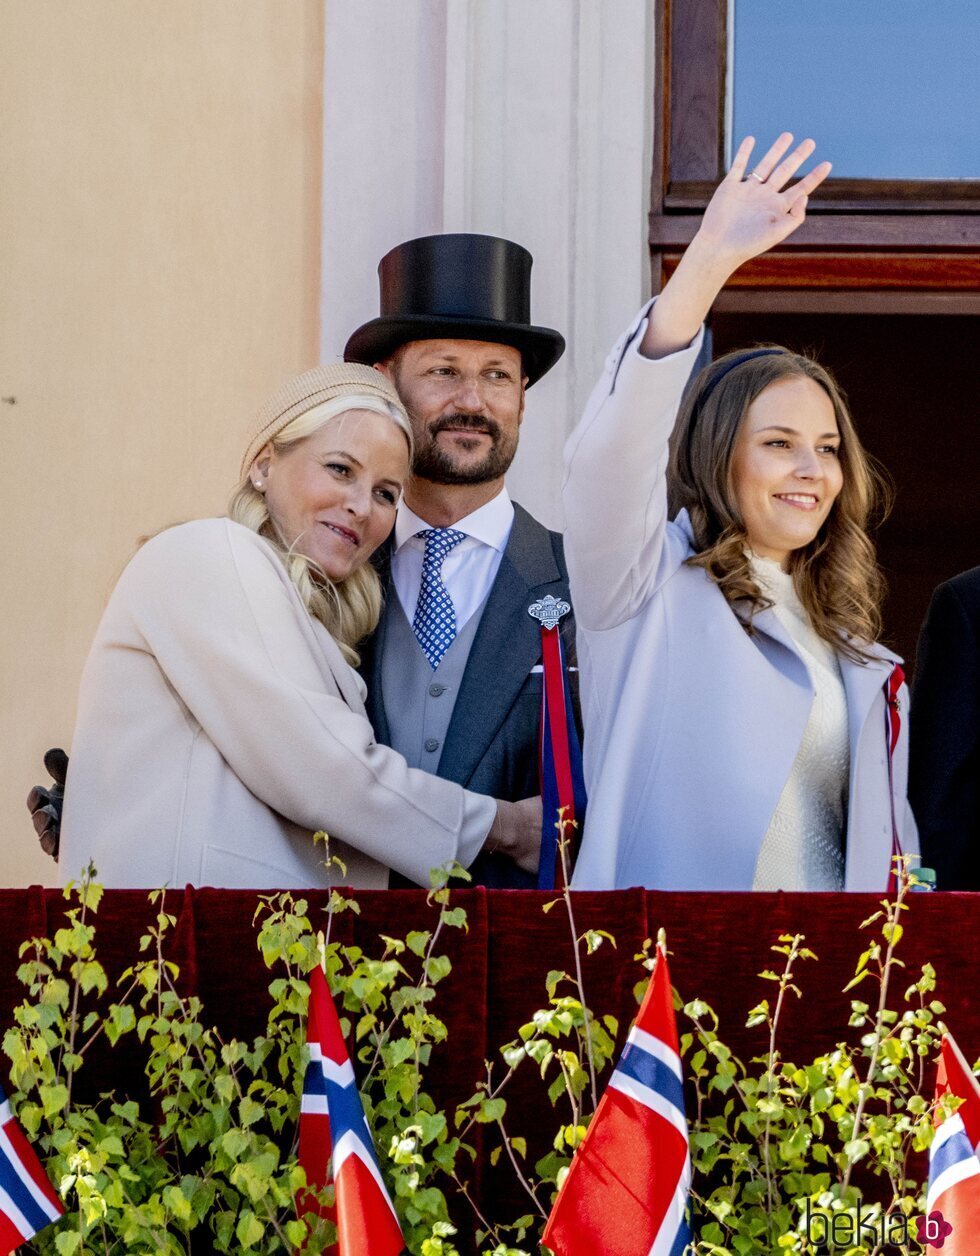 Mette-Marit de Noruega abraza a Haakon de Noruega en presencia de Ingrid Alexandra de Noruega en el Día de Noruega 2022